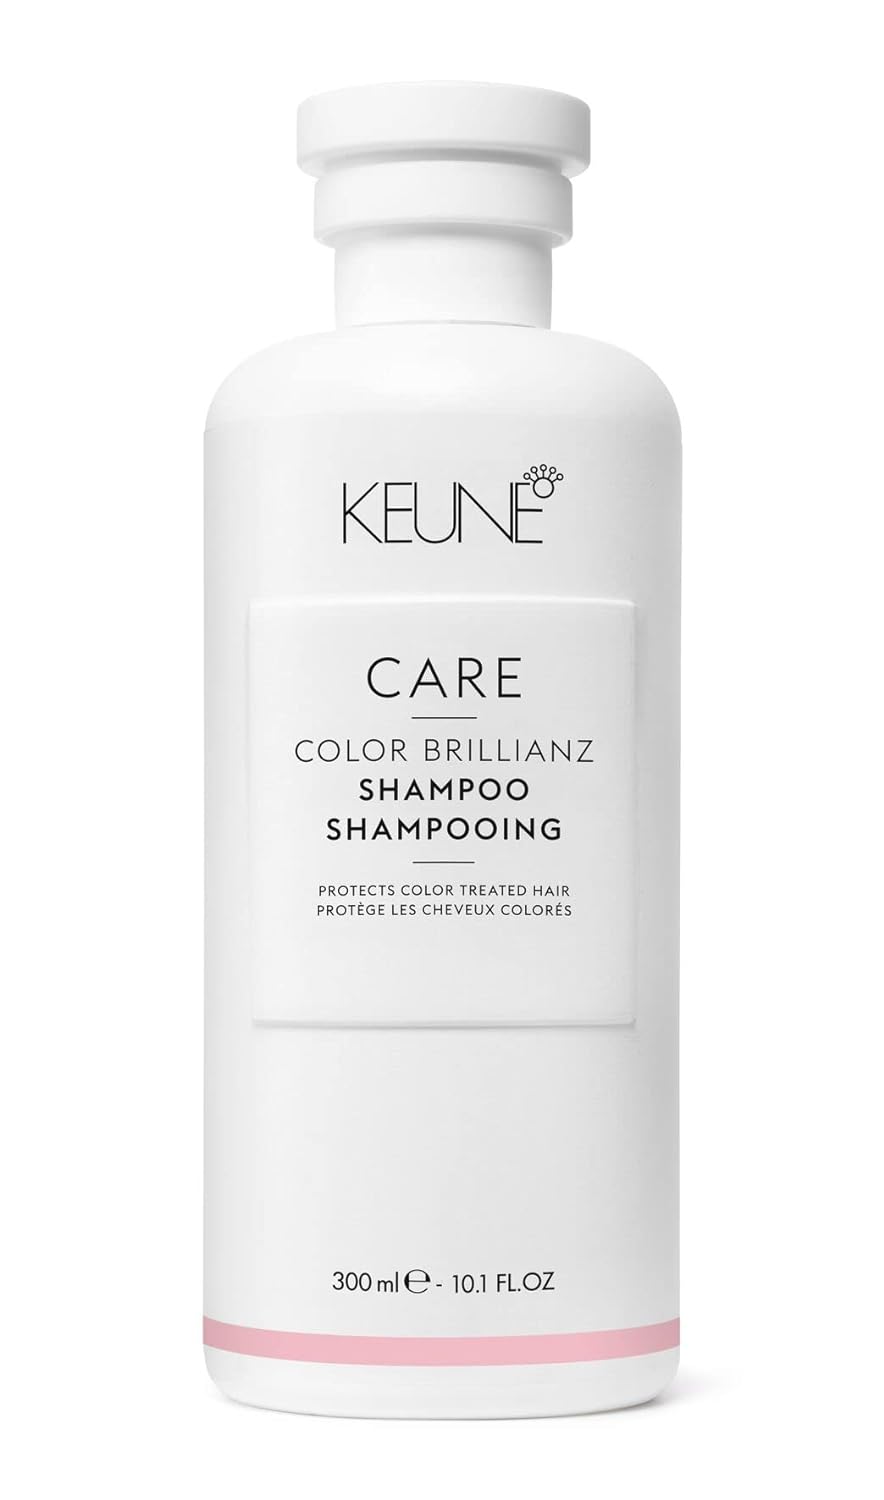 KEUNE CARE Color Brillianz Shampoo, 10.1 Fl Oz (Pack of 1)